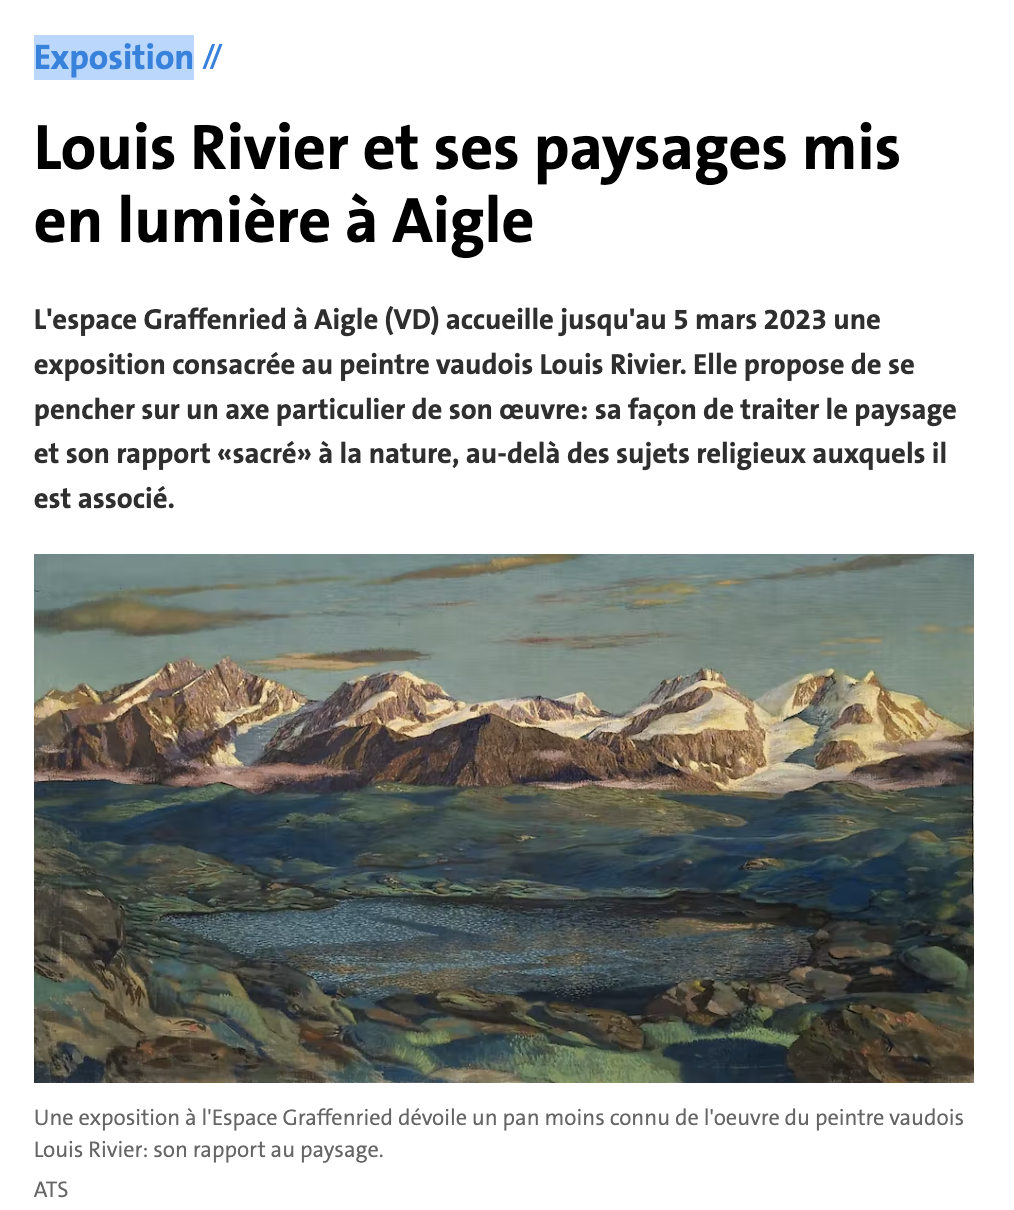 ATS (21.10.2022), Nicole Busenhart, Louis Rivier et ses paysages mis en lumière à Aigle